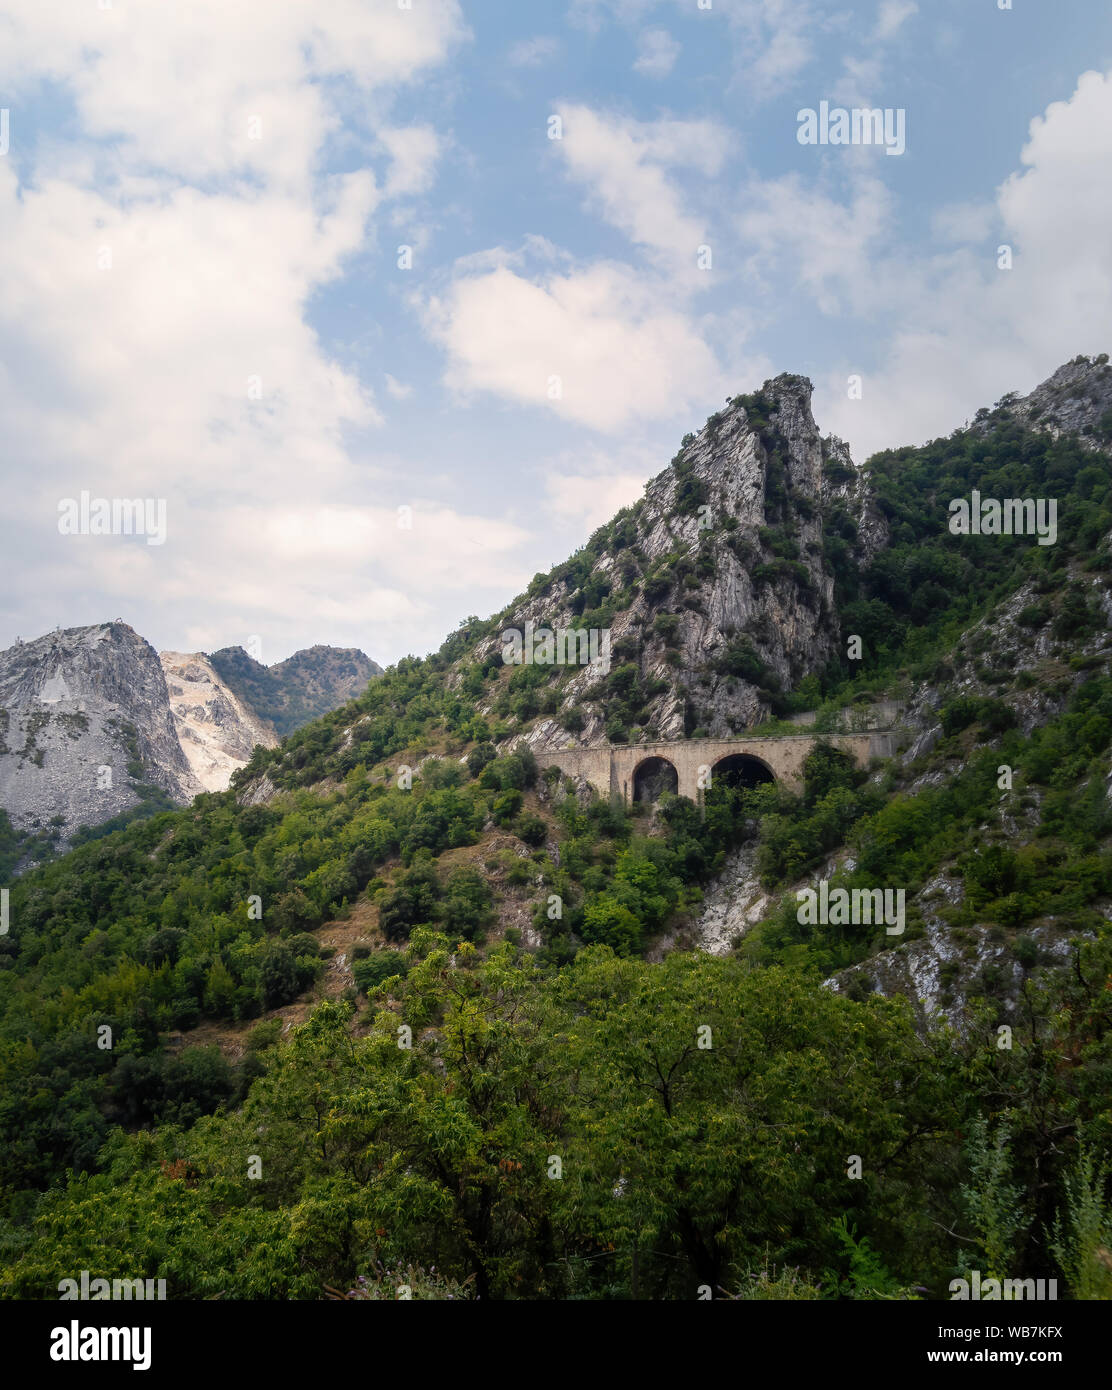 Vista di approccio per le cave di marmo delle Alpi Apuane, montagne vicino a Carrara, Italia. Famosa per il marmo bianco ma anche popolare con i turisti. Foto Stock